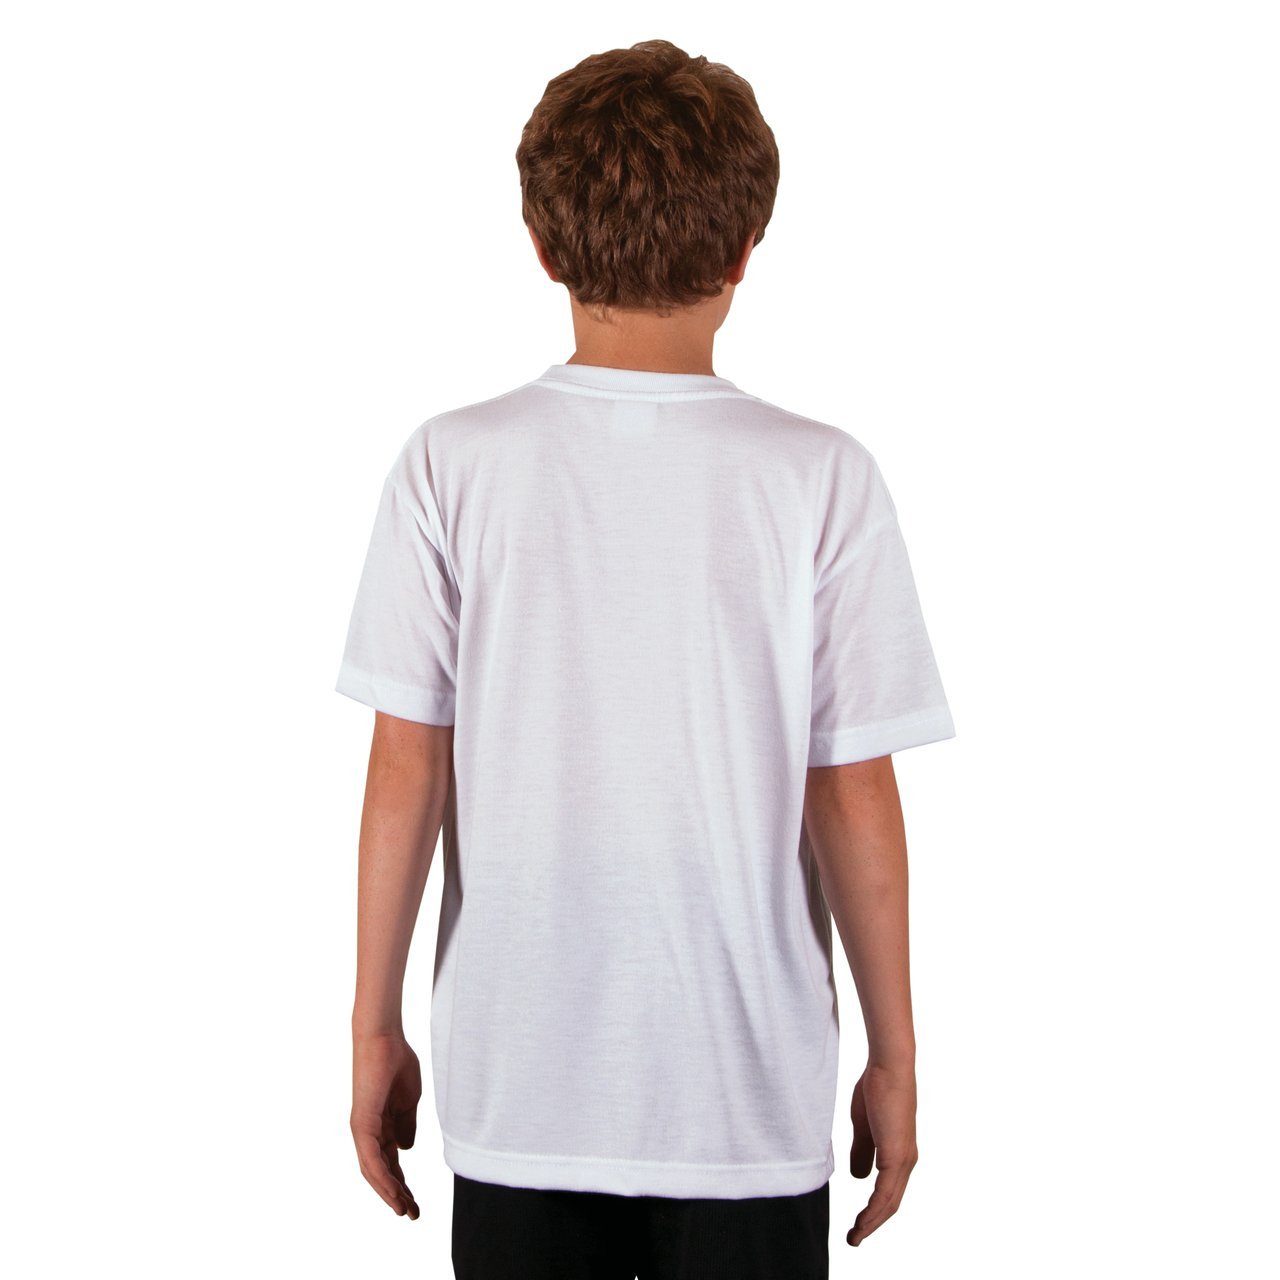 Youth SpunSoft Tech Short Sleeve T-Shirt